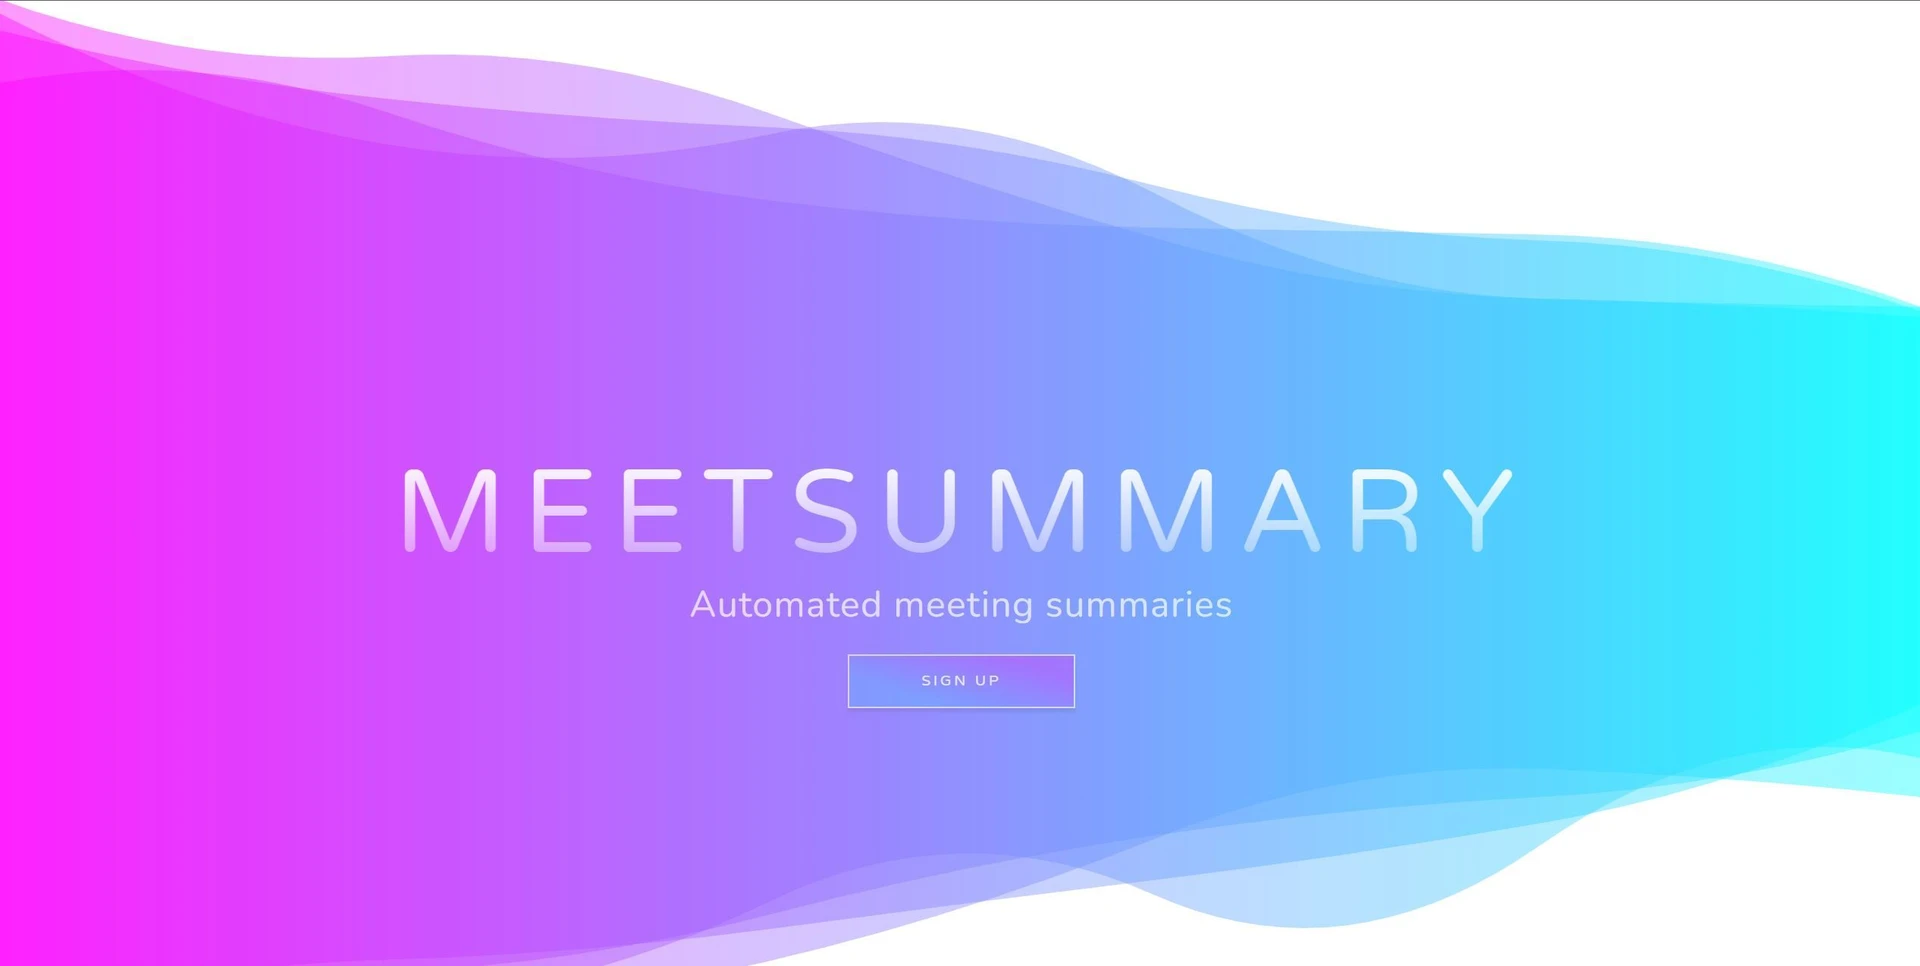 Meet Summarywebsite picture